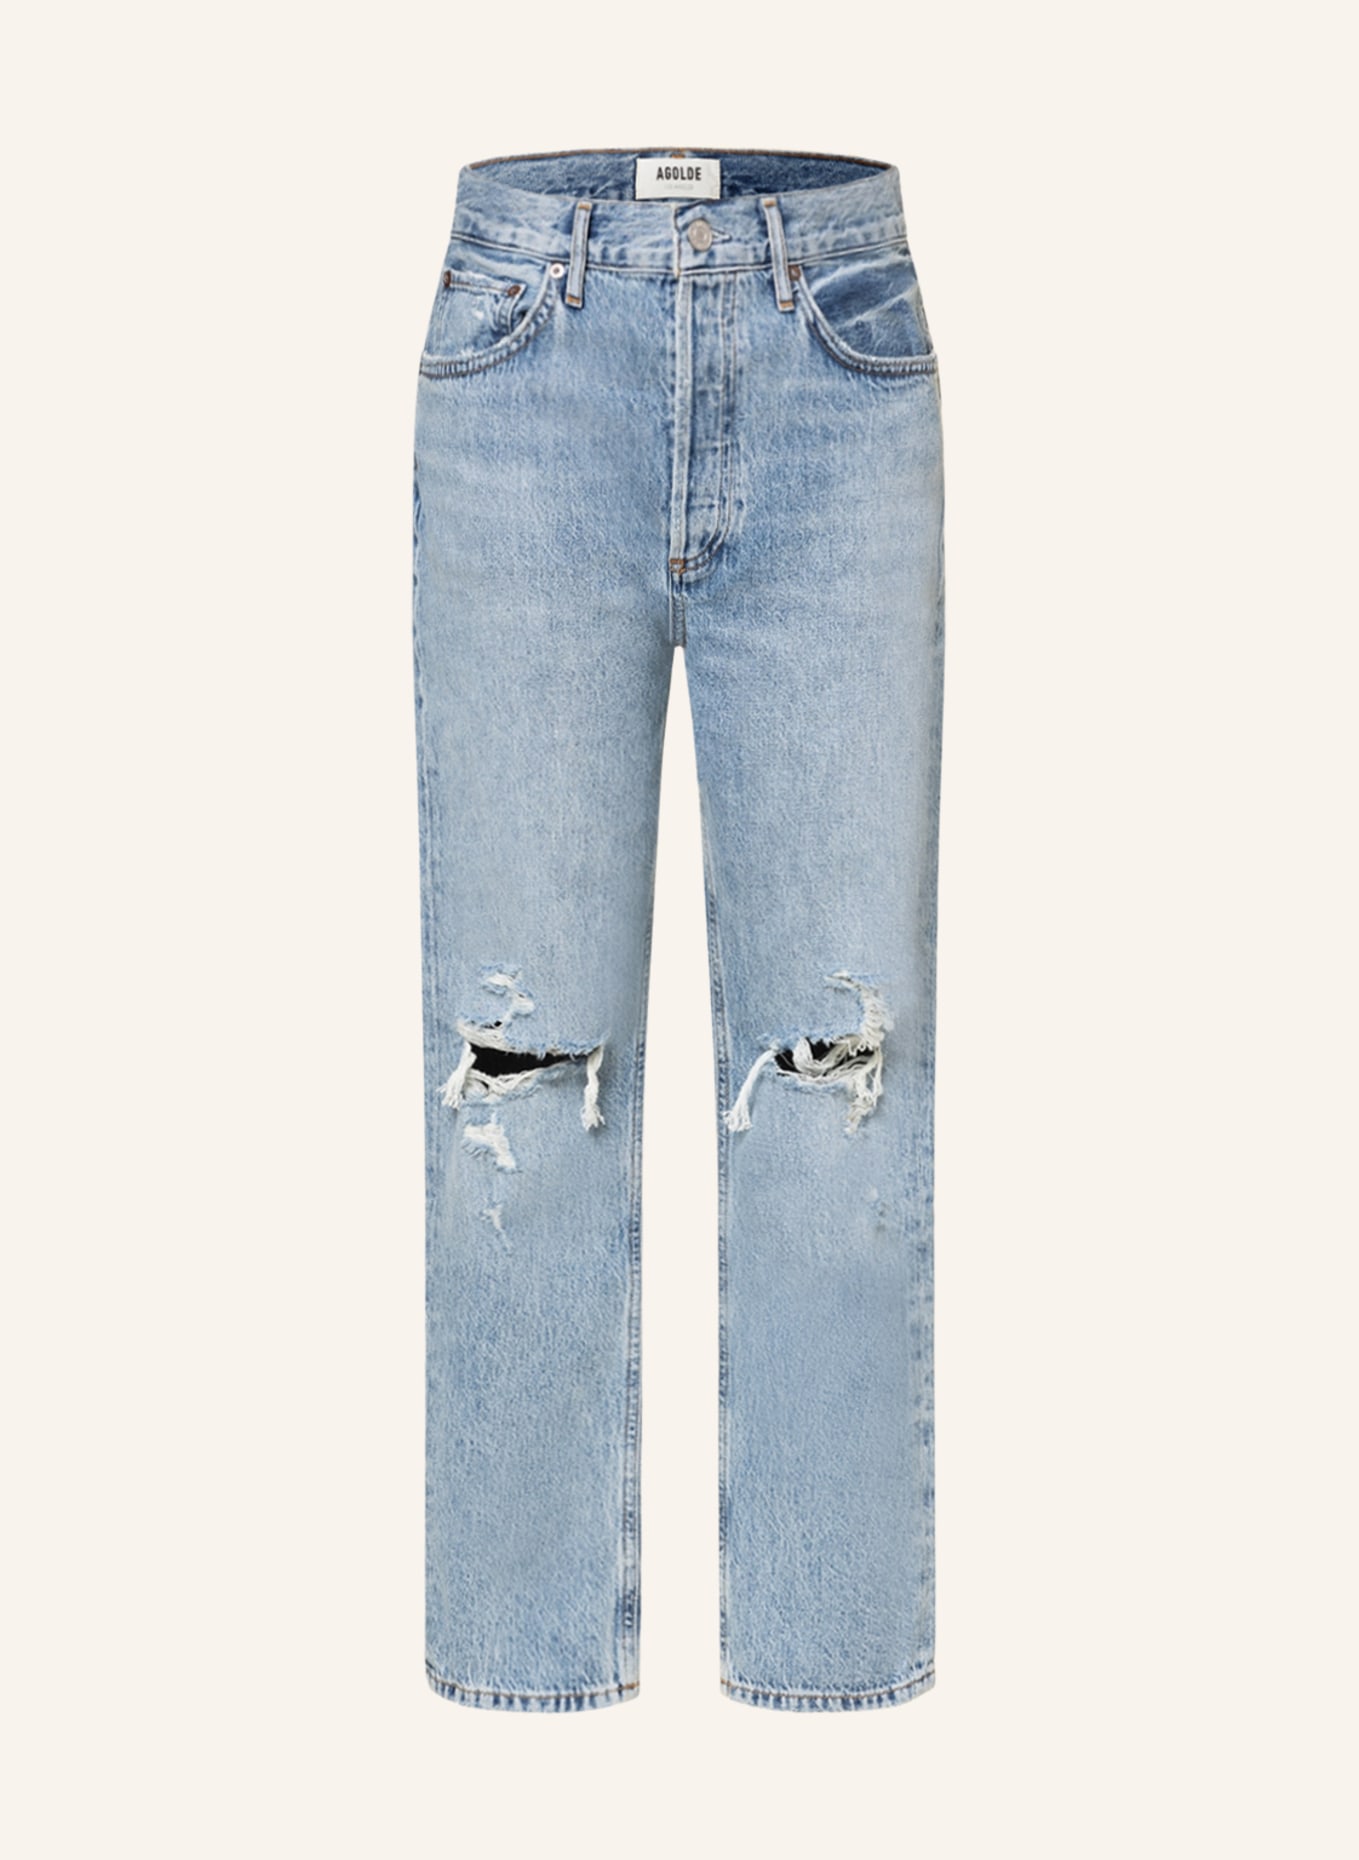 AGOLDE Destroyed jeans RILEY CROP, Color: Blitz med indigo (Image 1)